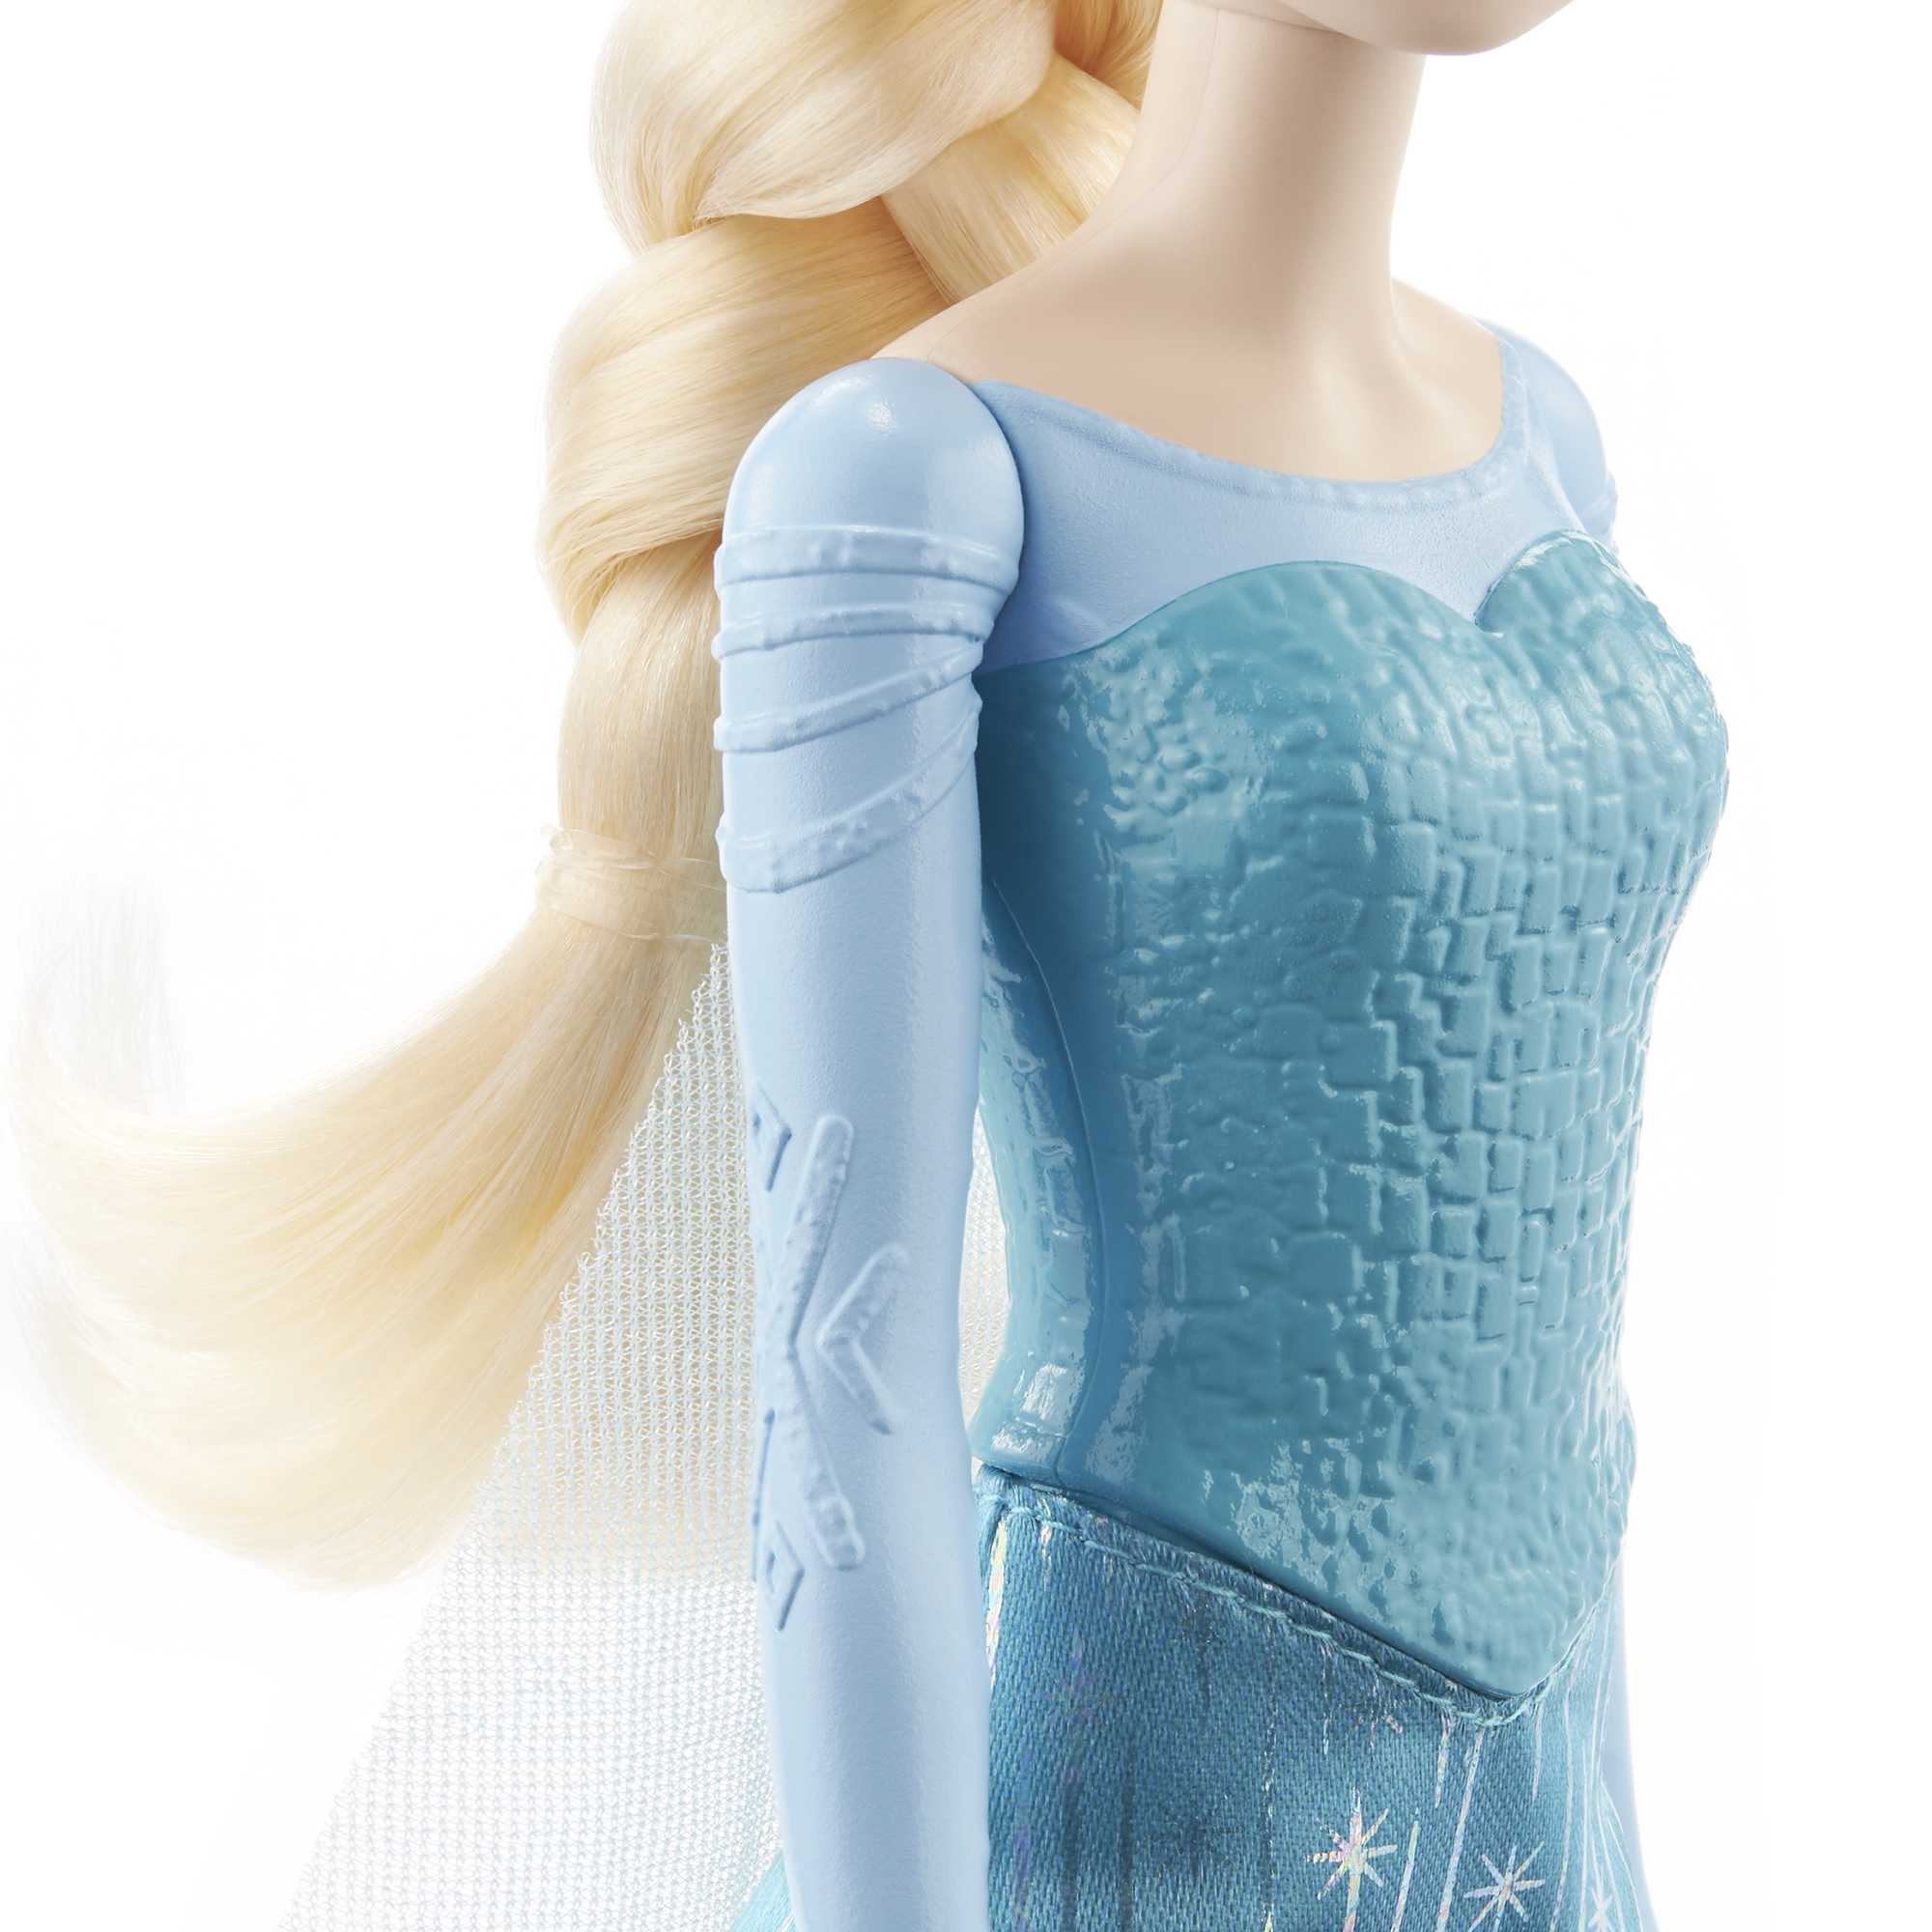 Poupée Elsa Frozen reine des neiges - Disney